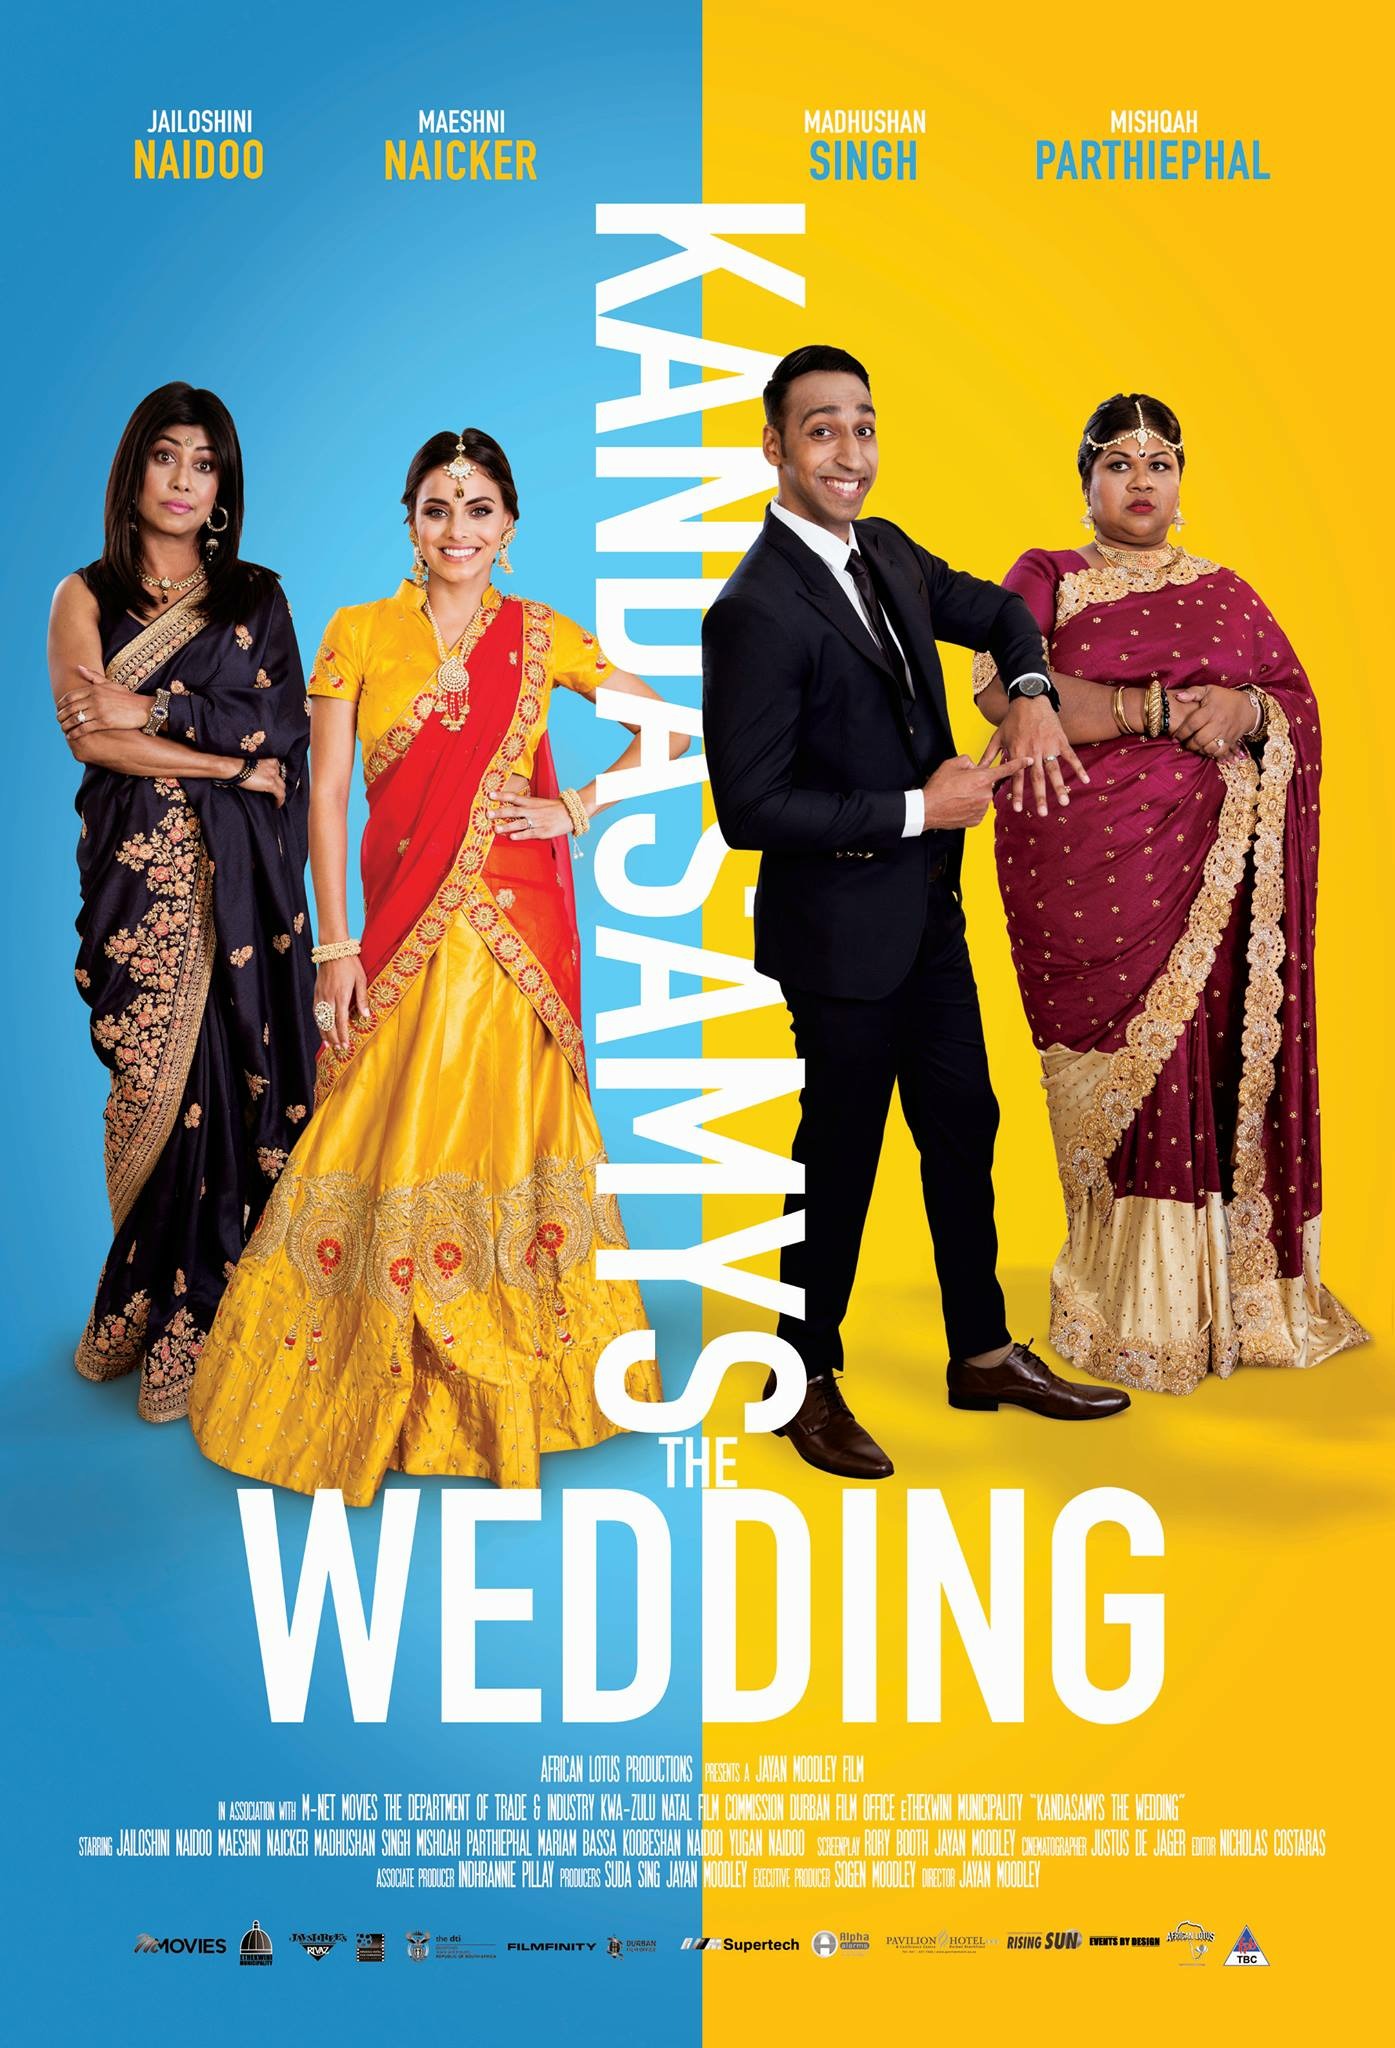 Mega Sized Movie Poster Image for Kandasamys: The Wedding 